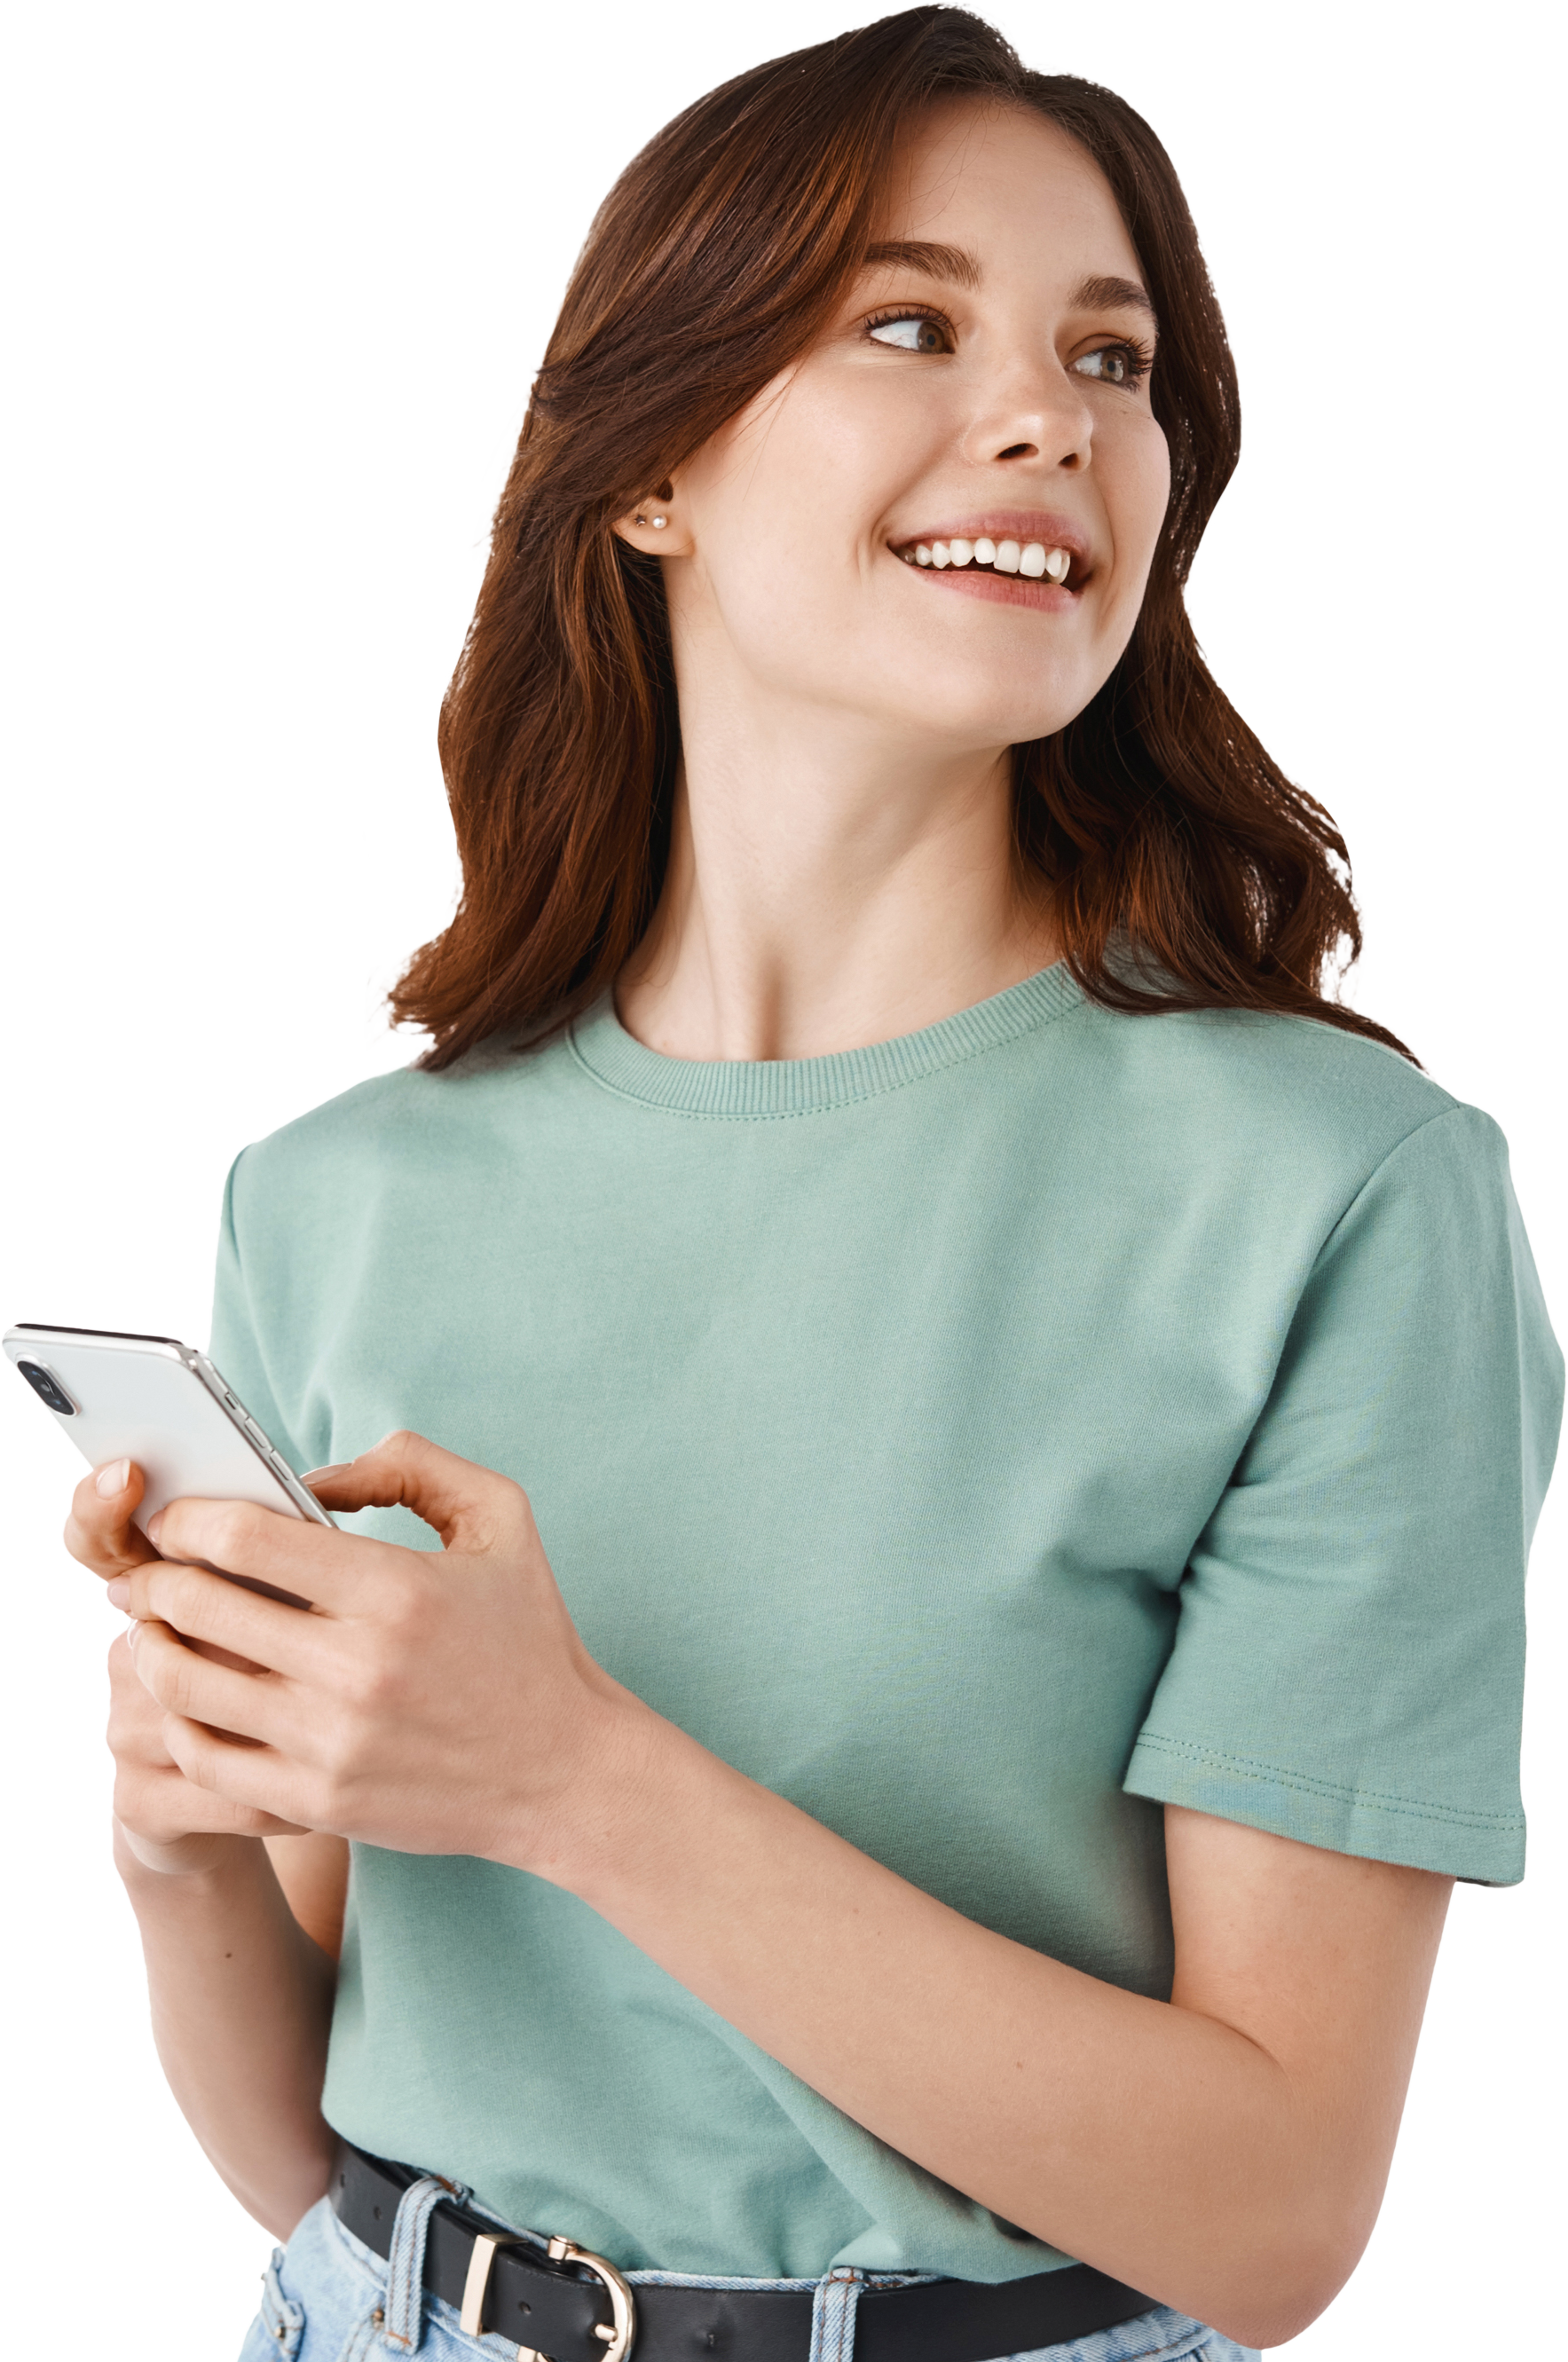 Imagen decorativa de una mujer usando su dispositivo móvil para conectar con nuestros servicios